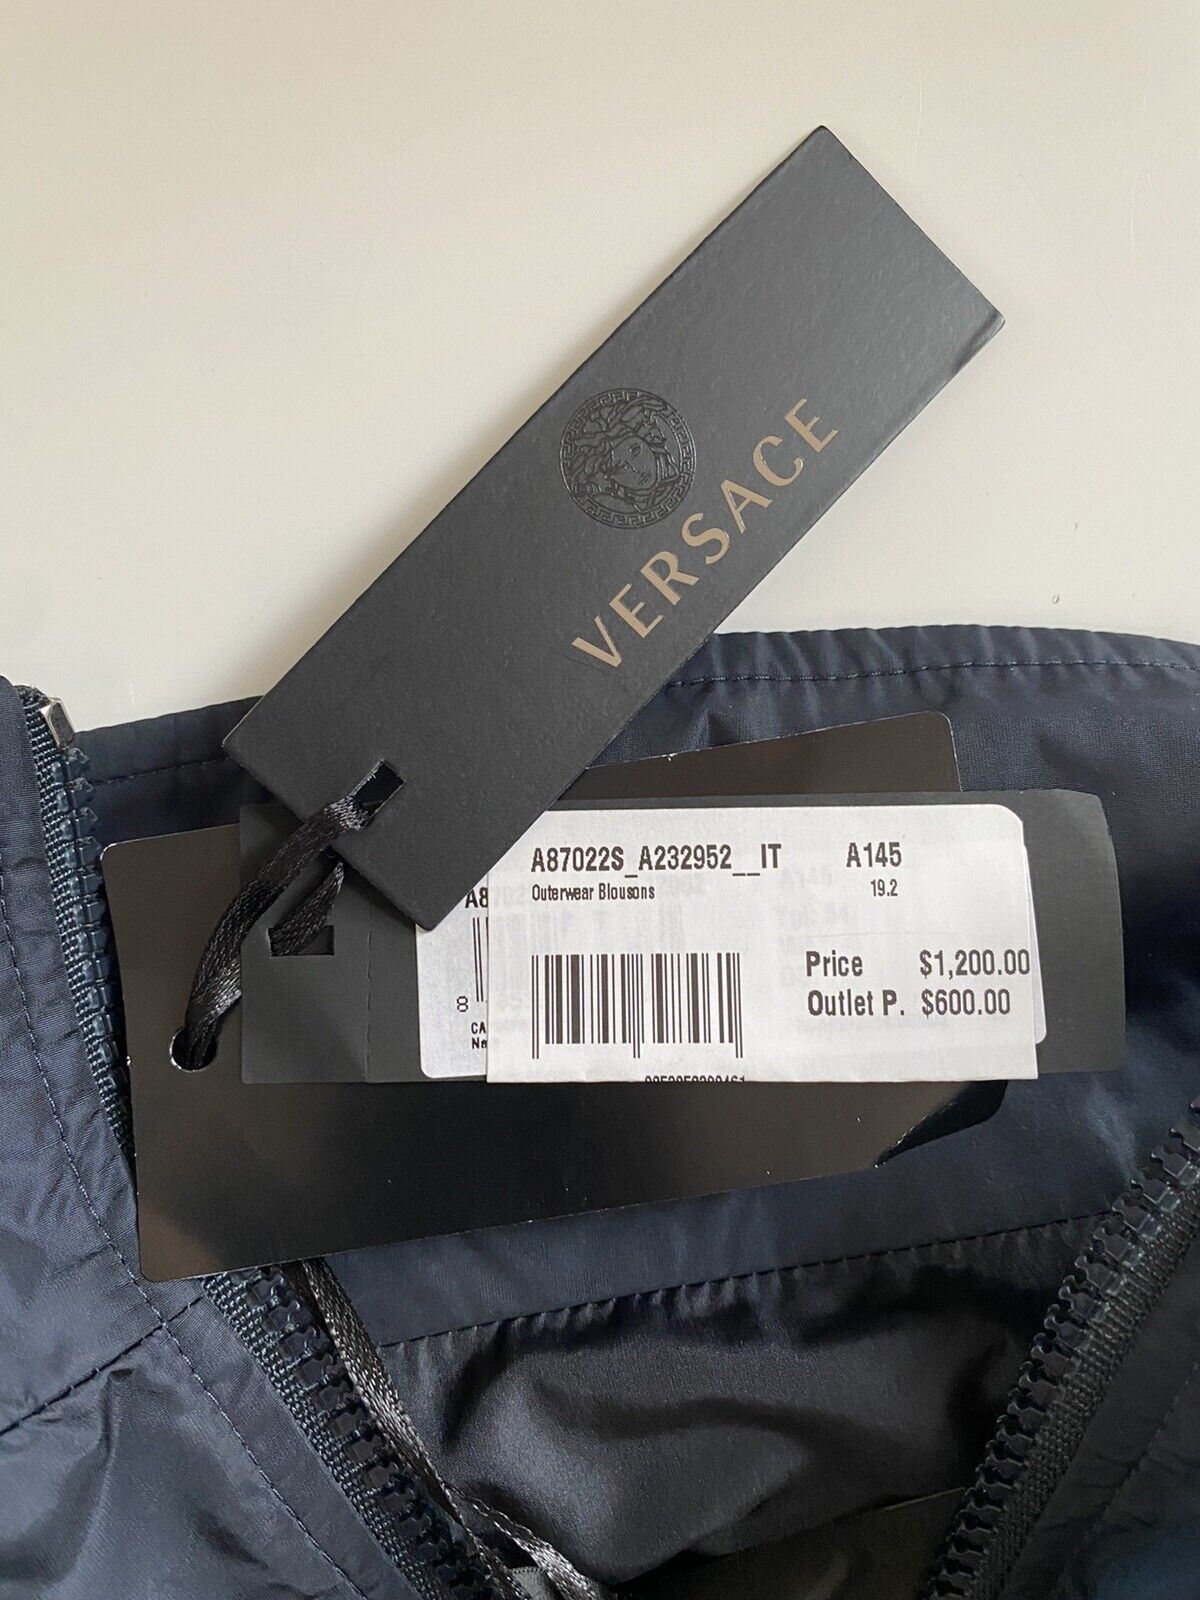 Neu mit Etikett: 1.200 $ Versace Herrenjacke, Windjacke, Blau, 44 US (54 Euro) A87022S Italien 